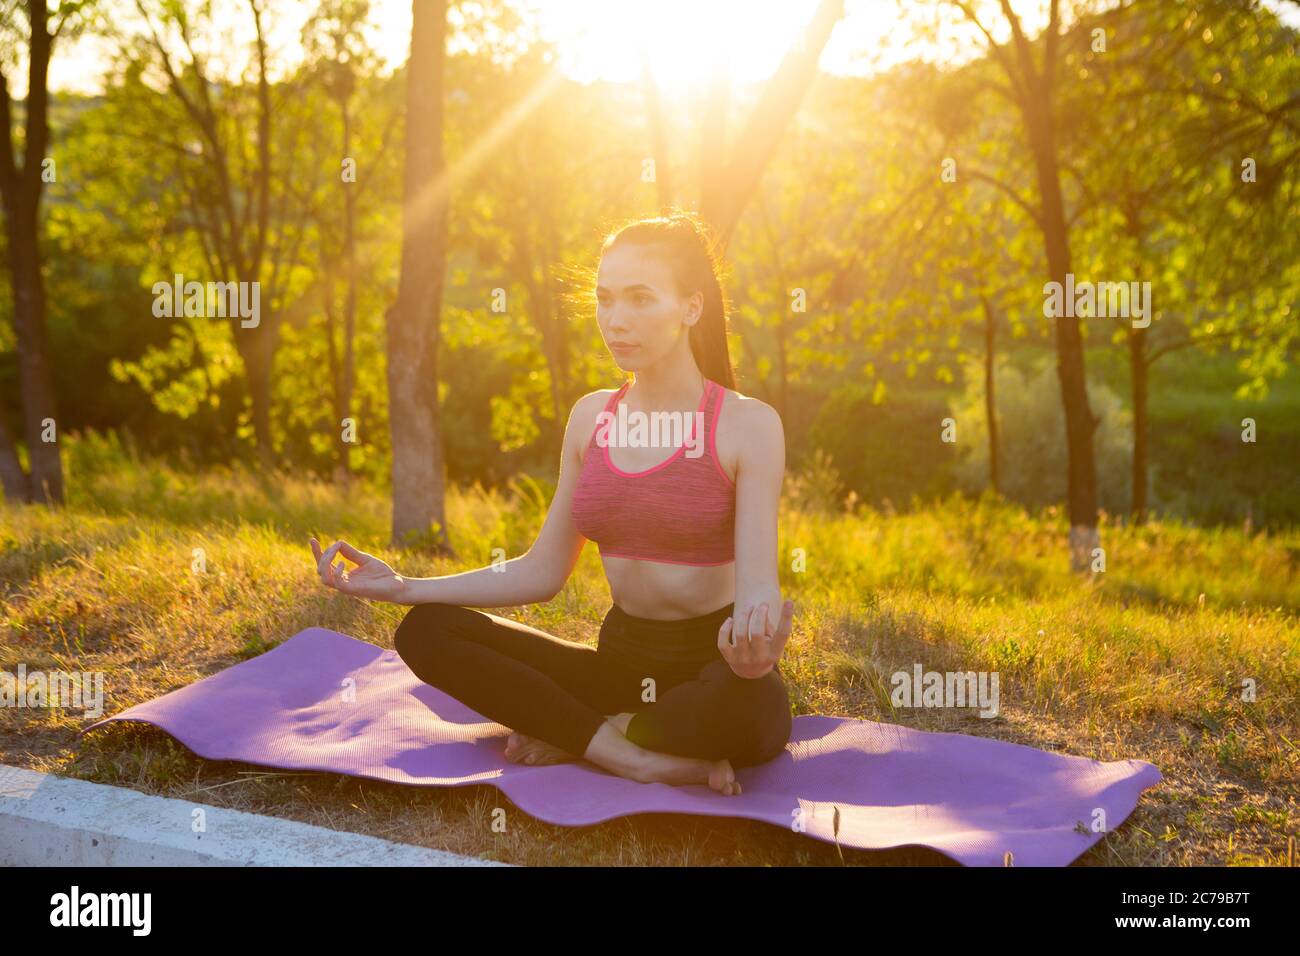 La femme fait la méditation de yoga dans la nature Banque D'Images